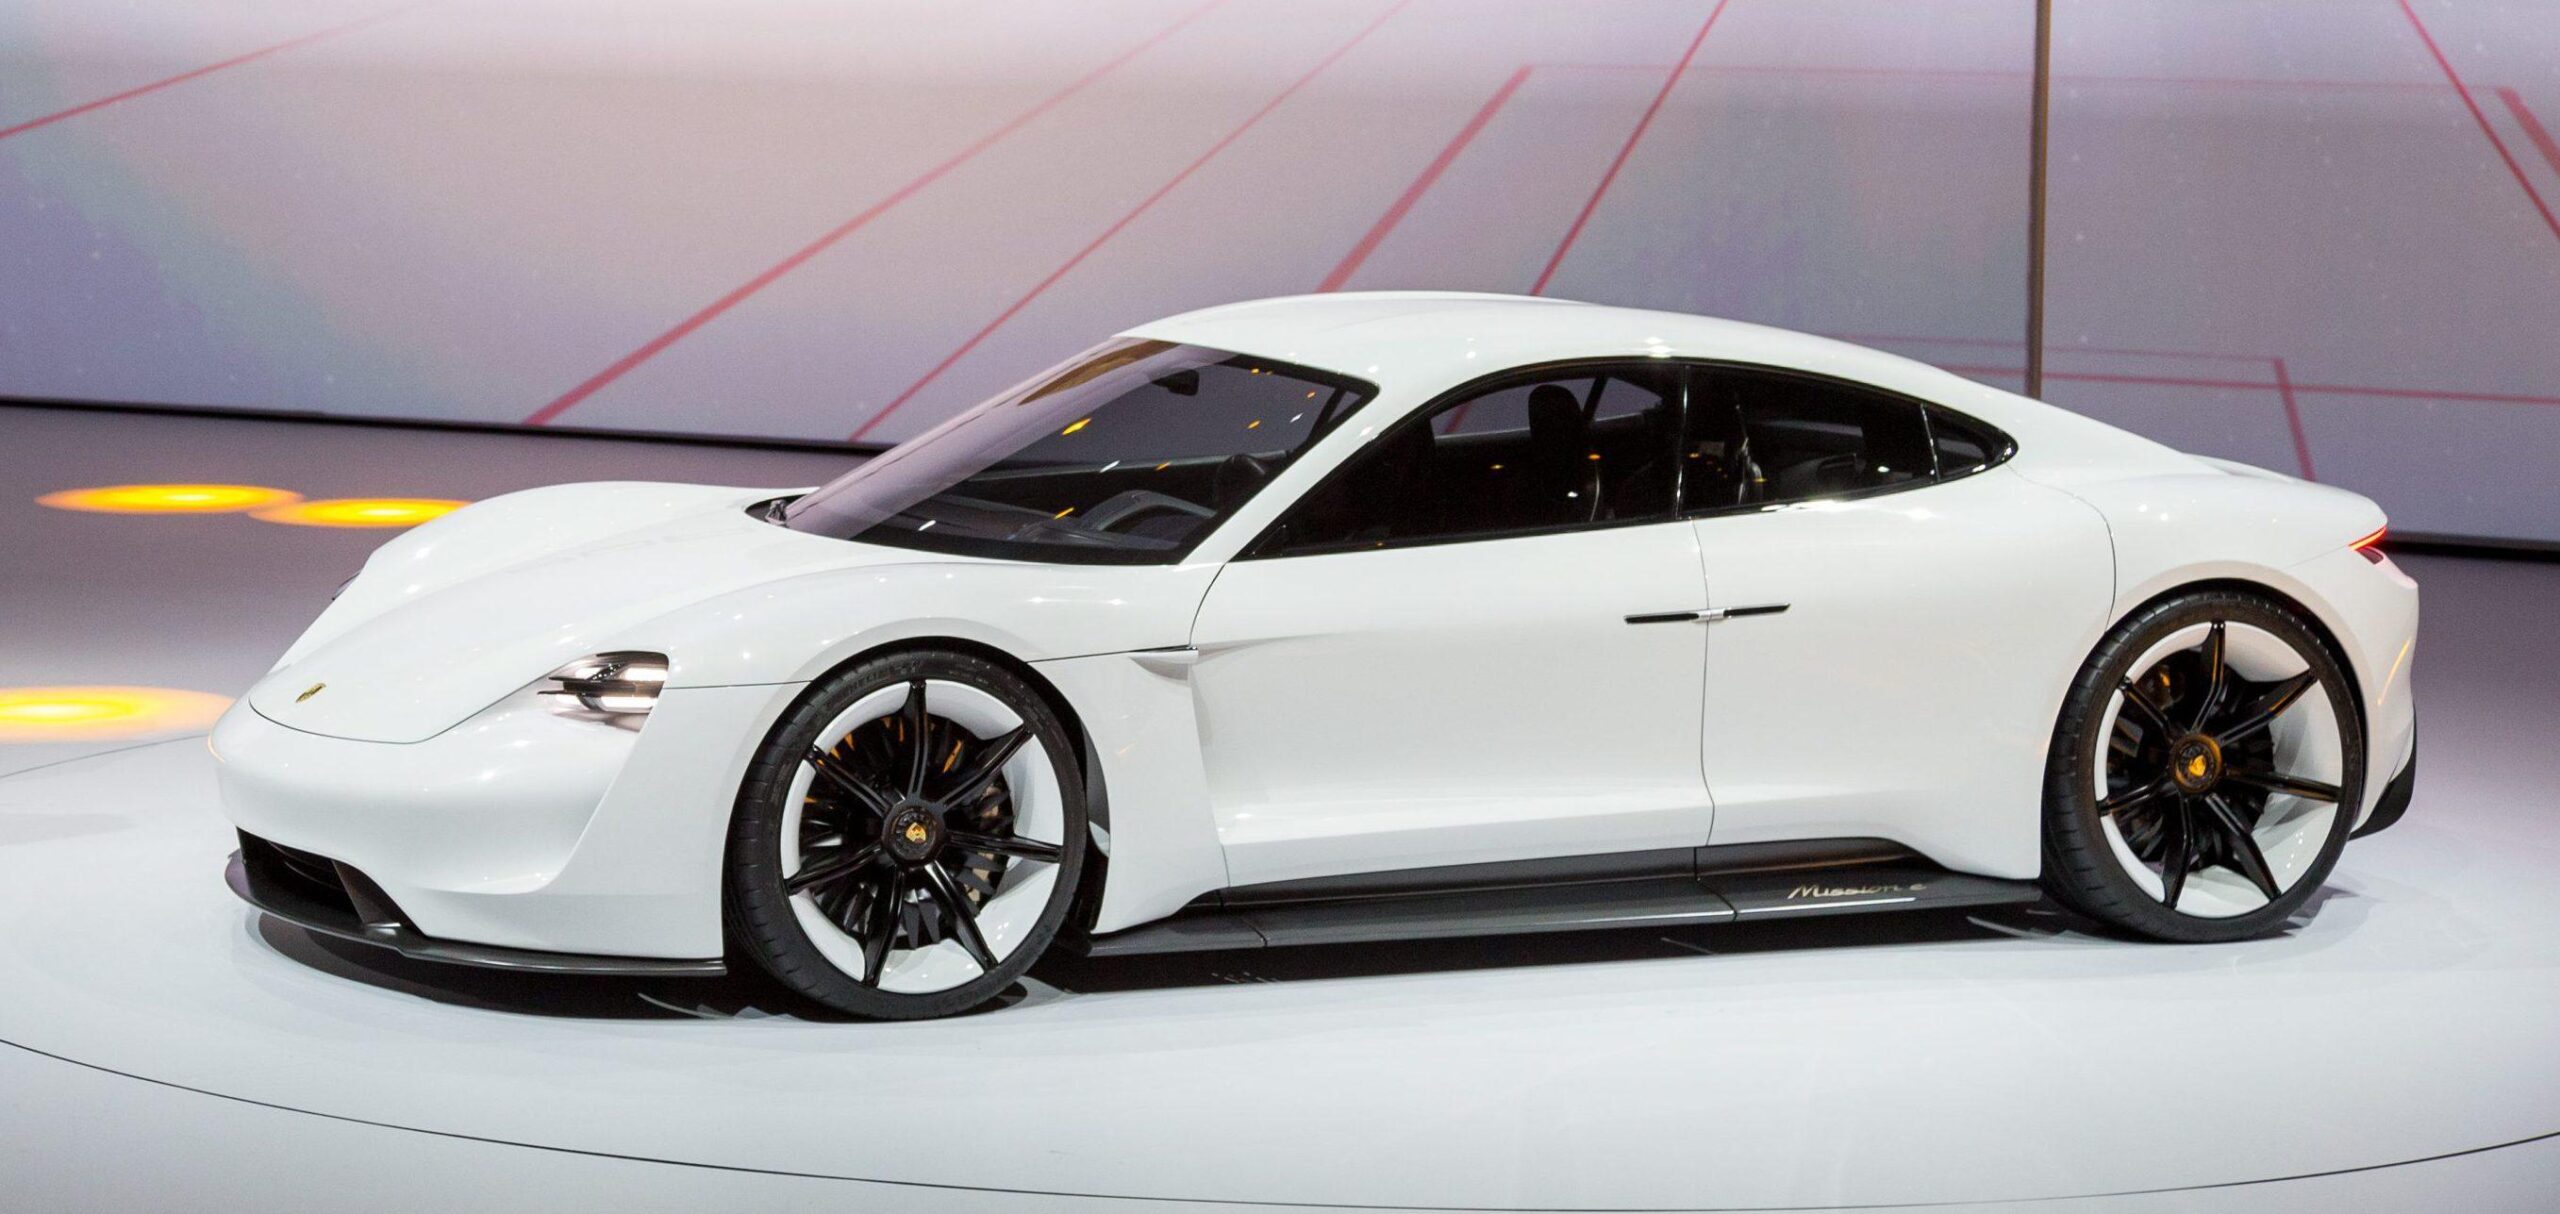 Porsche releases first teaser Wallpaper of new Taycan